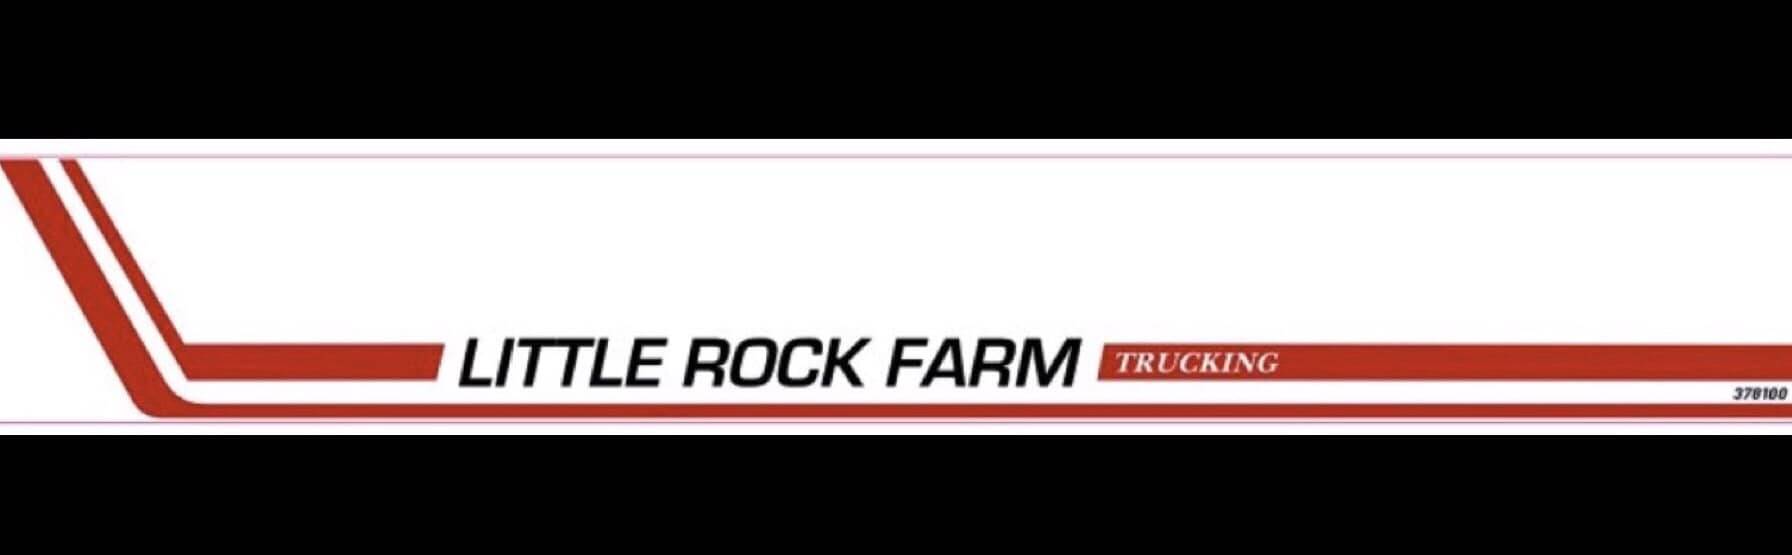 Little Rock Farm Trucking